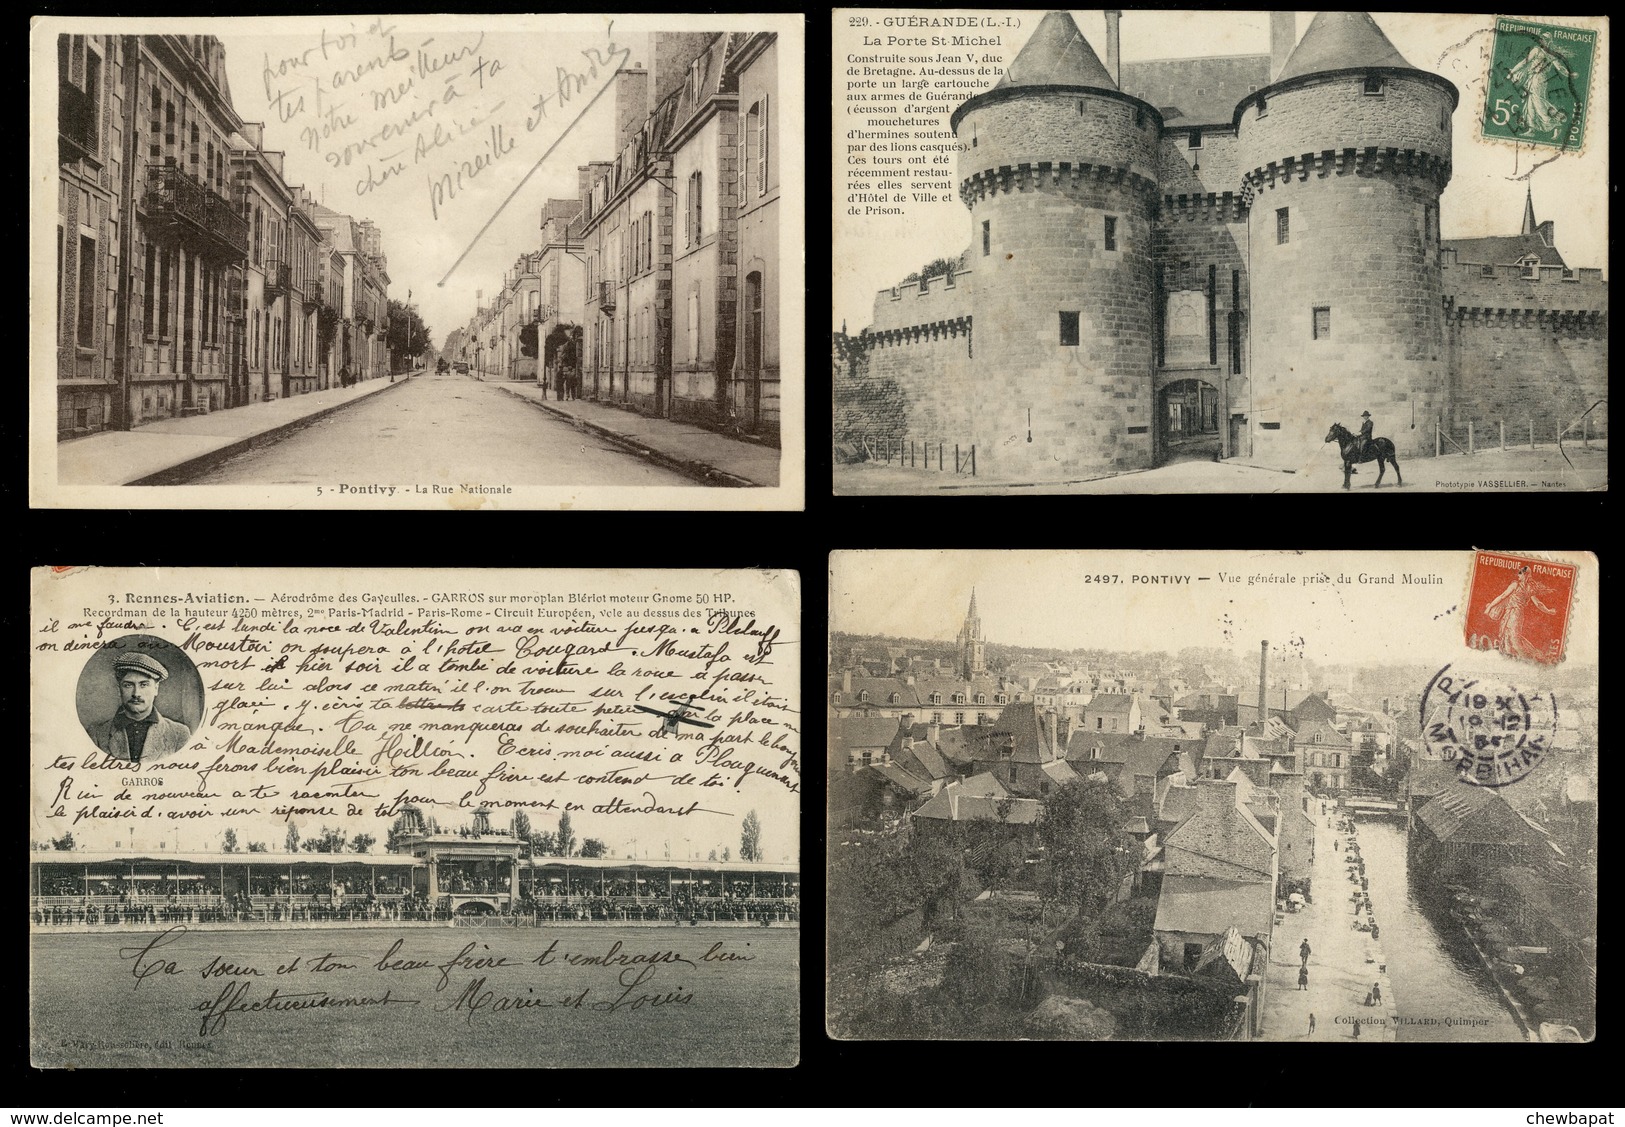 Villes et villages n° 2 - Lot de 20 cartes anciennes - Toutes scannées